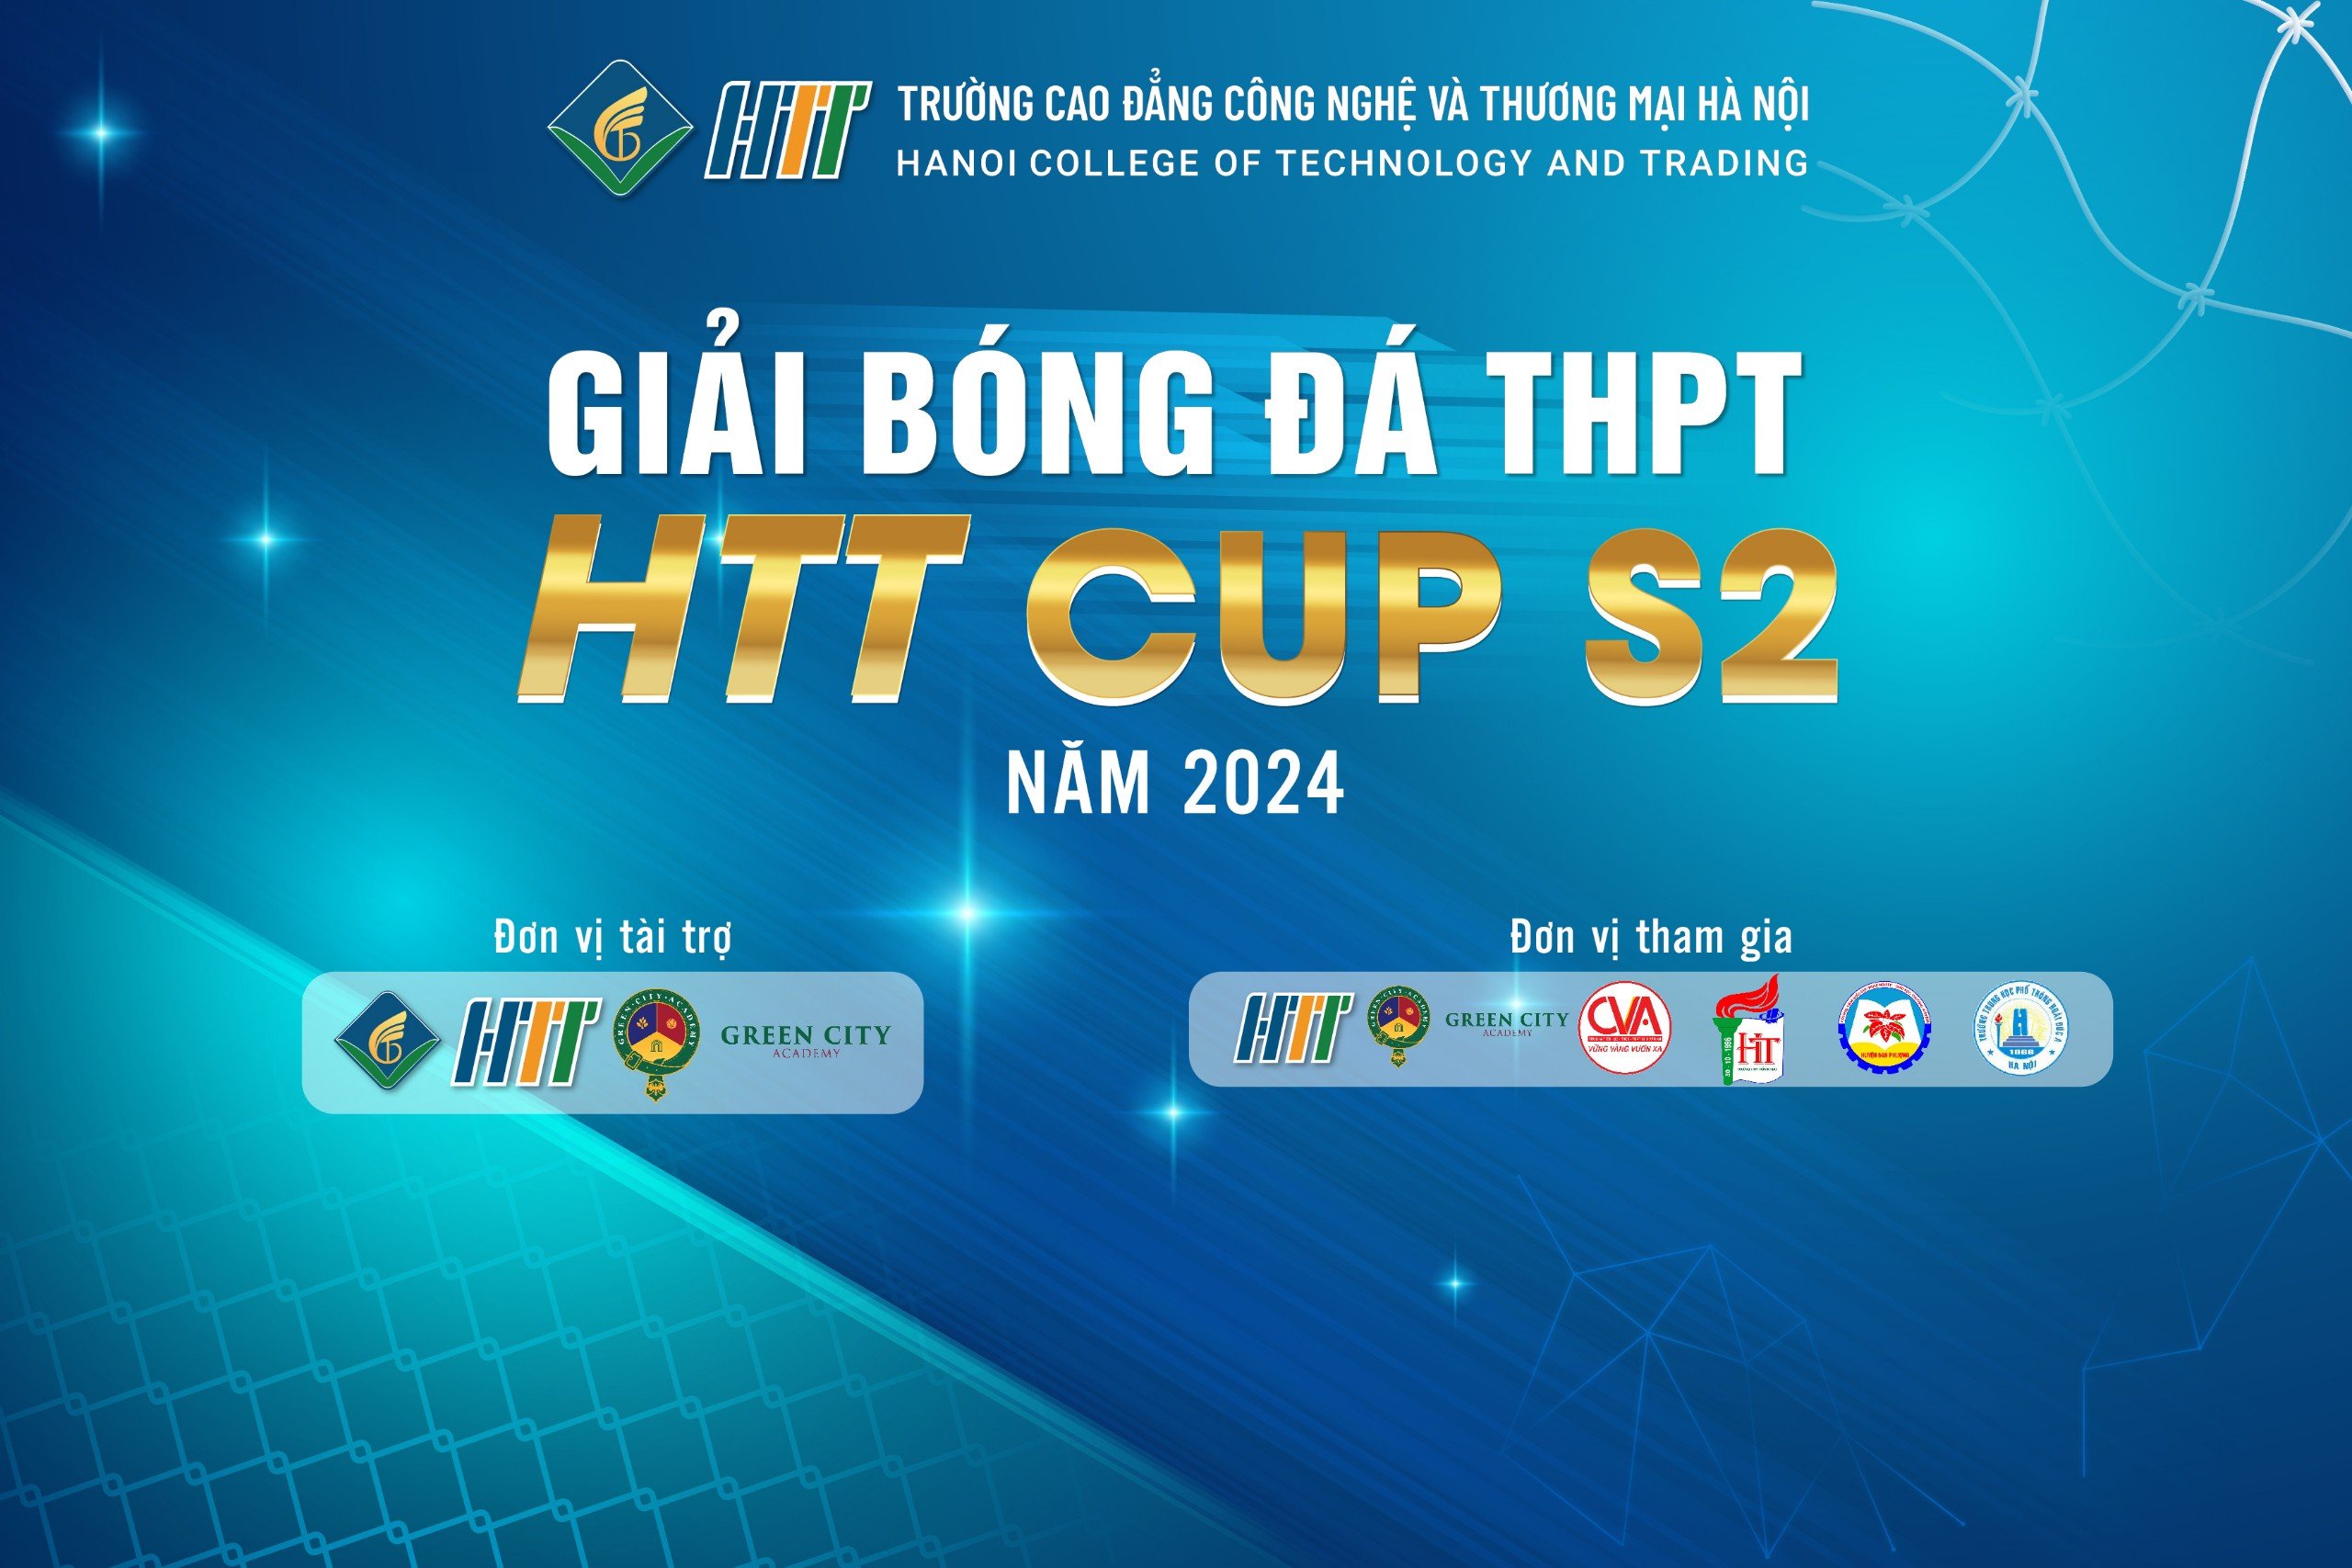 Giải bóng đá HTT cup S2